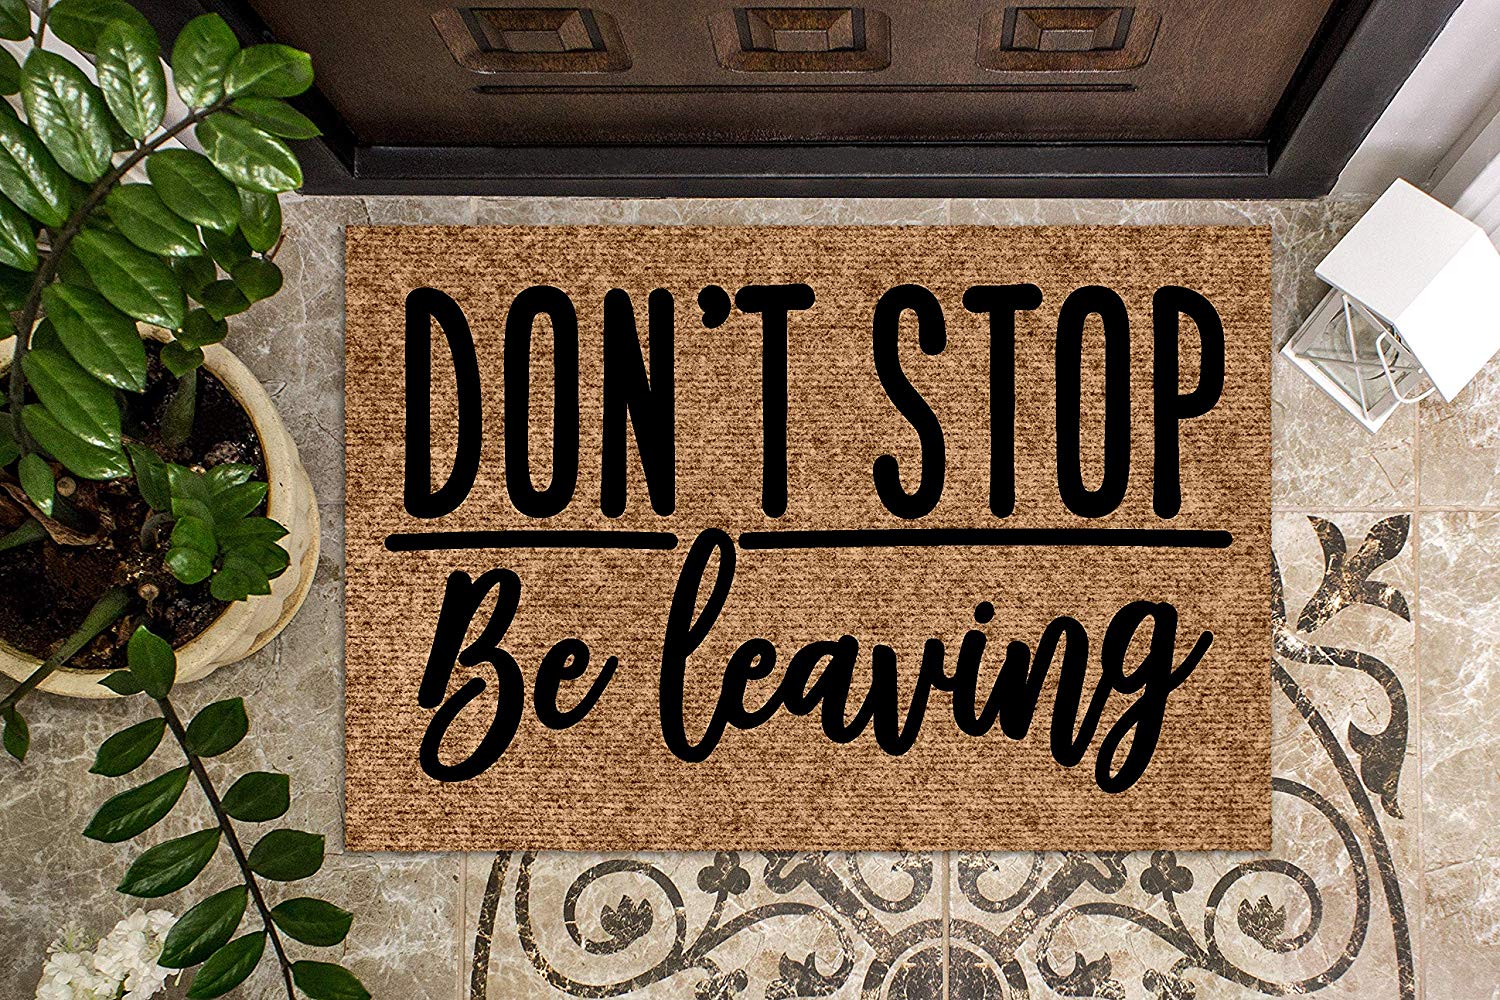 Don't Stop Be Leaving Doormat - Funny Journey no solicitors doormat